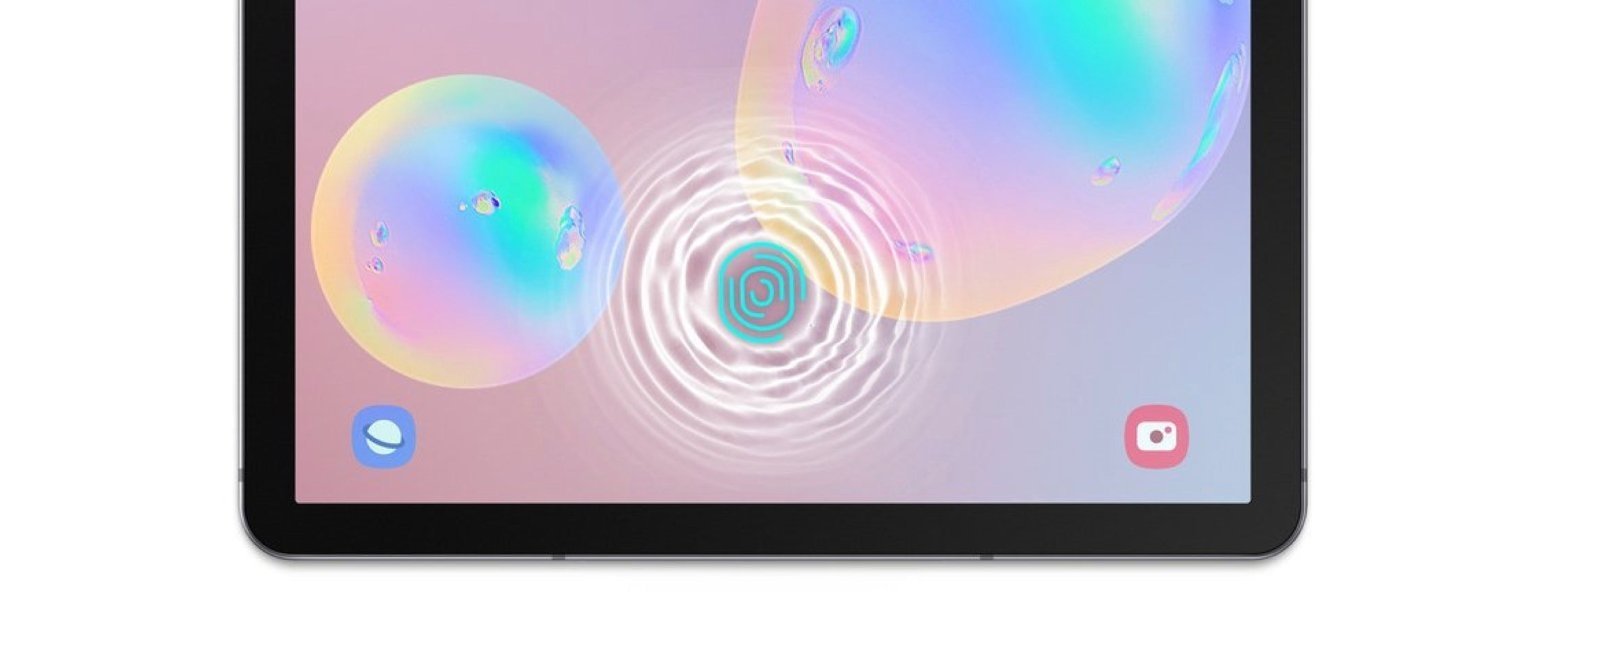 Lector de huellas en pantalla de Samsung Galaxy Tab S6